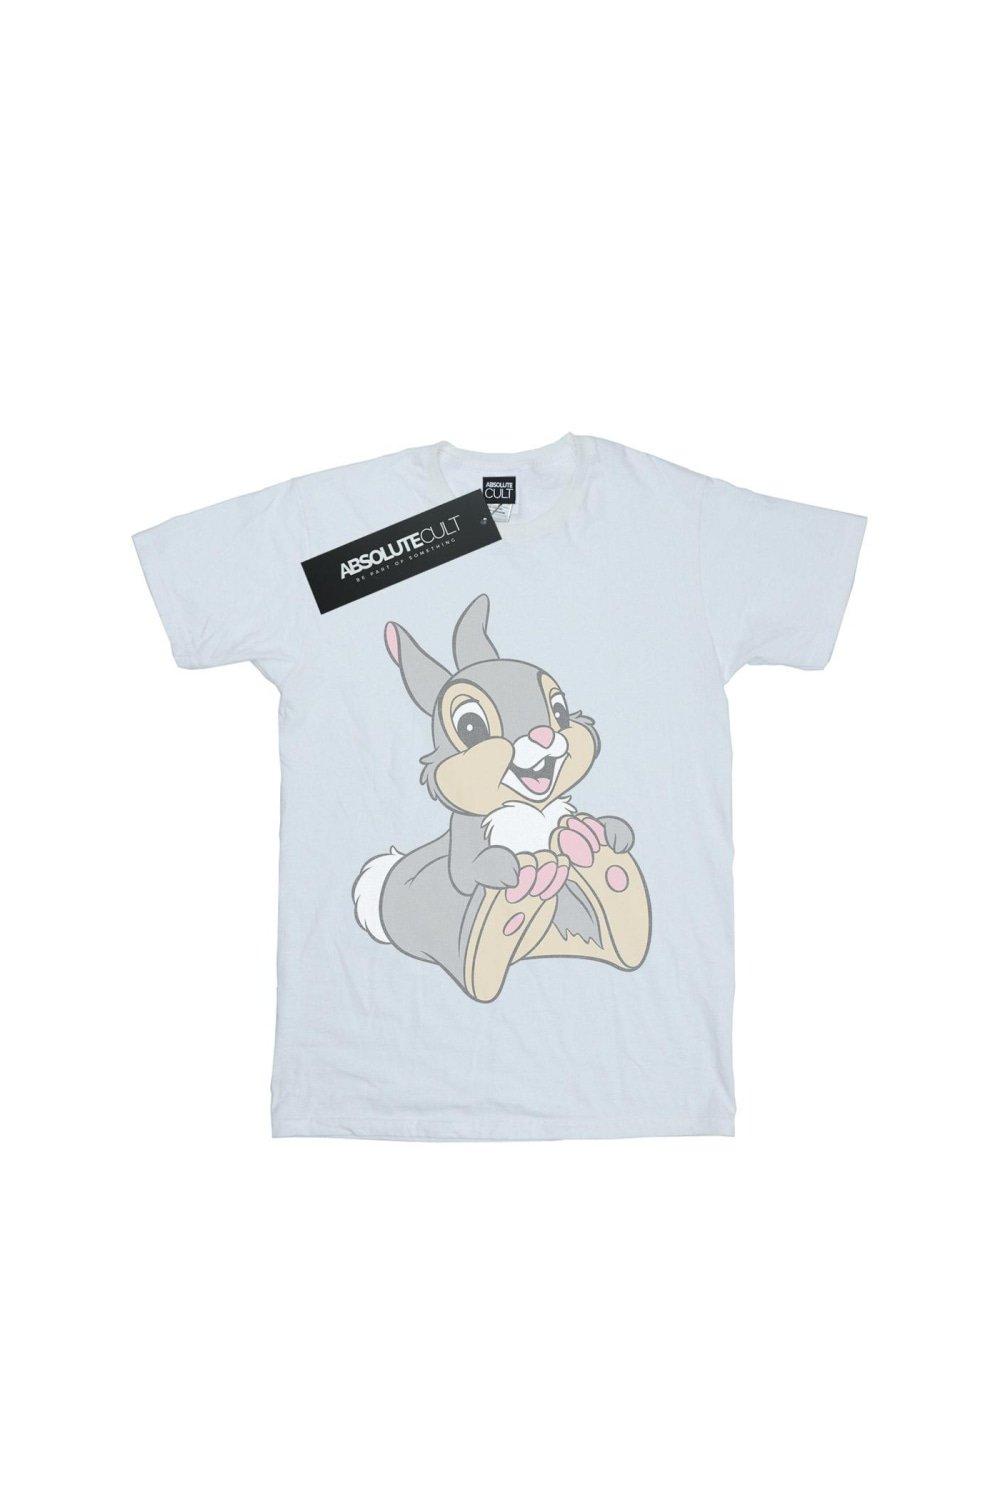 Классическая футболка Thumper Bambi, белый